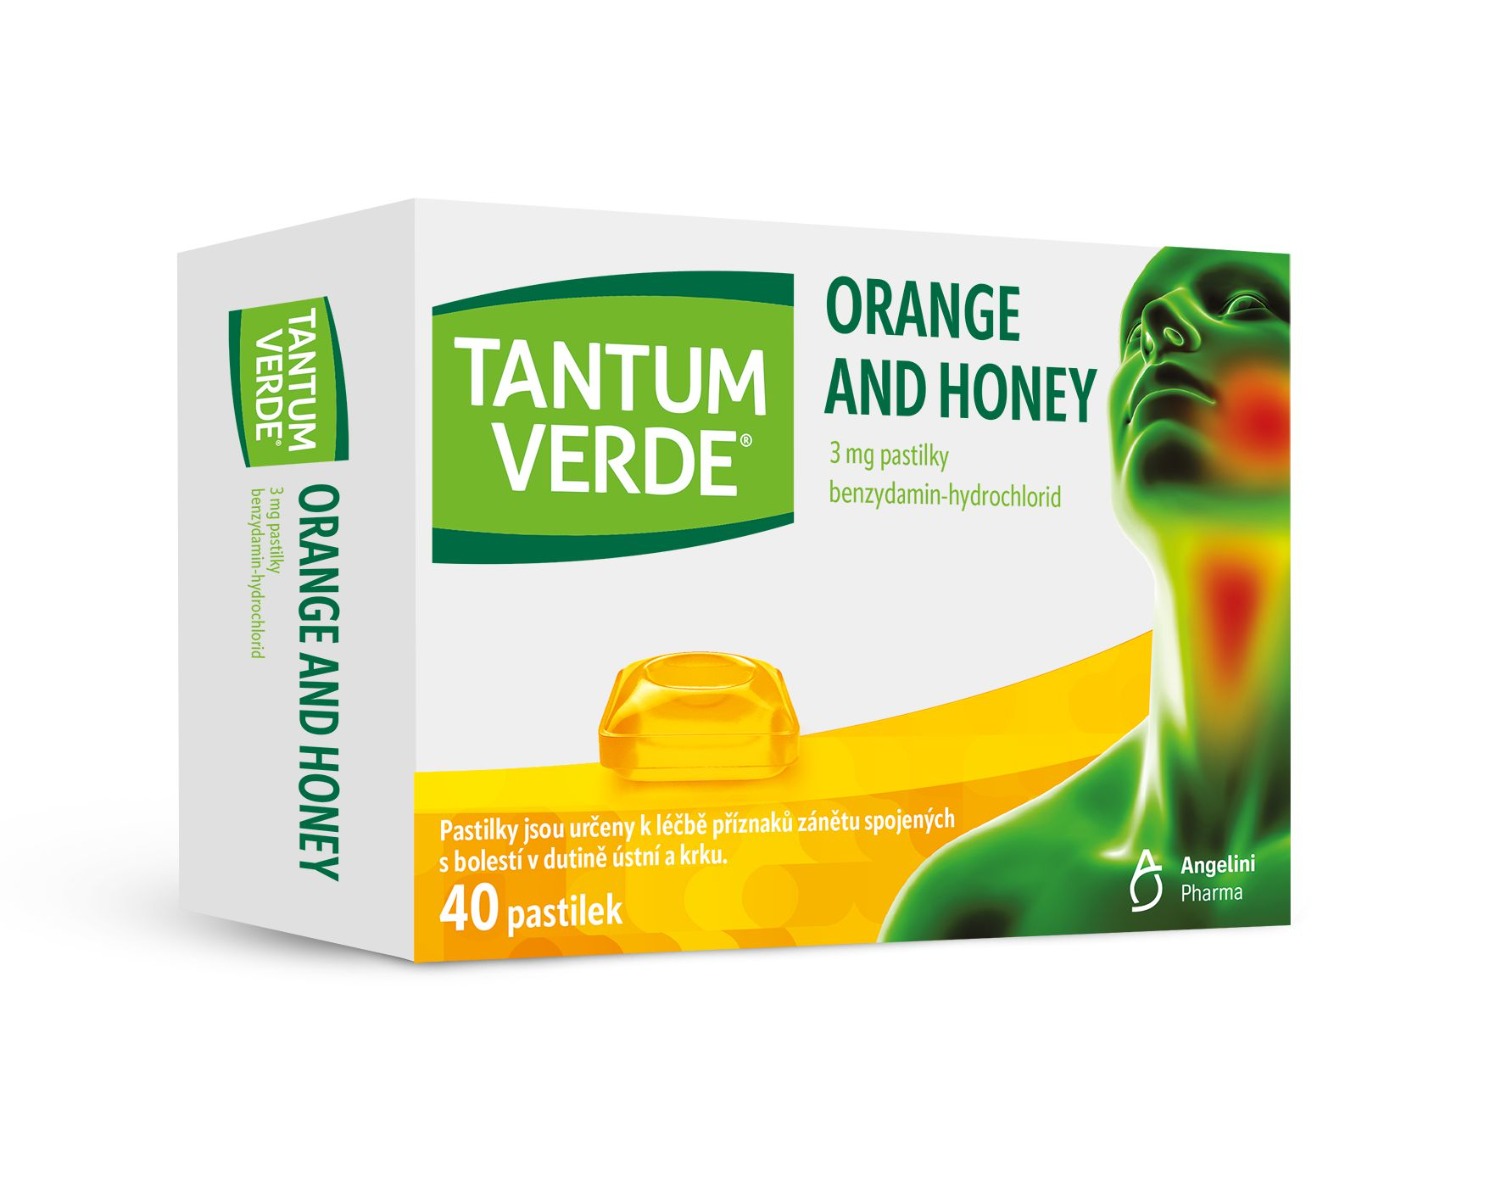 Tantum verde Orange and Honey 3 mg 40 pastilek Tantum verde